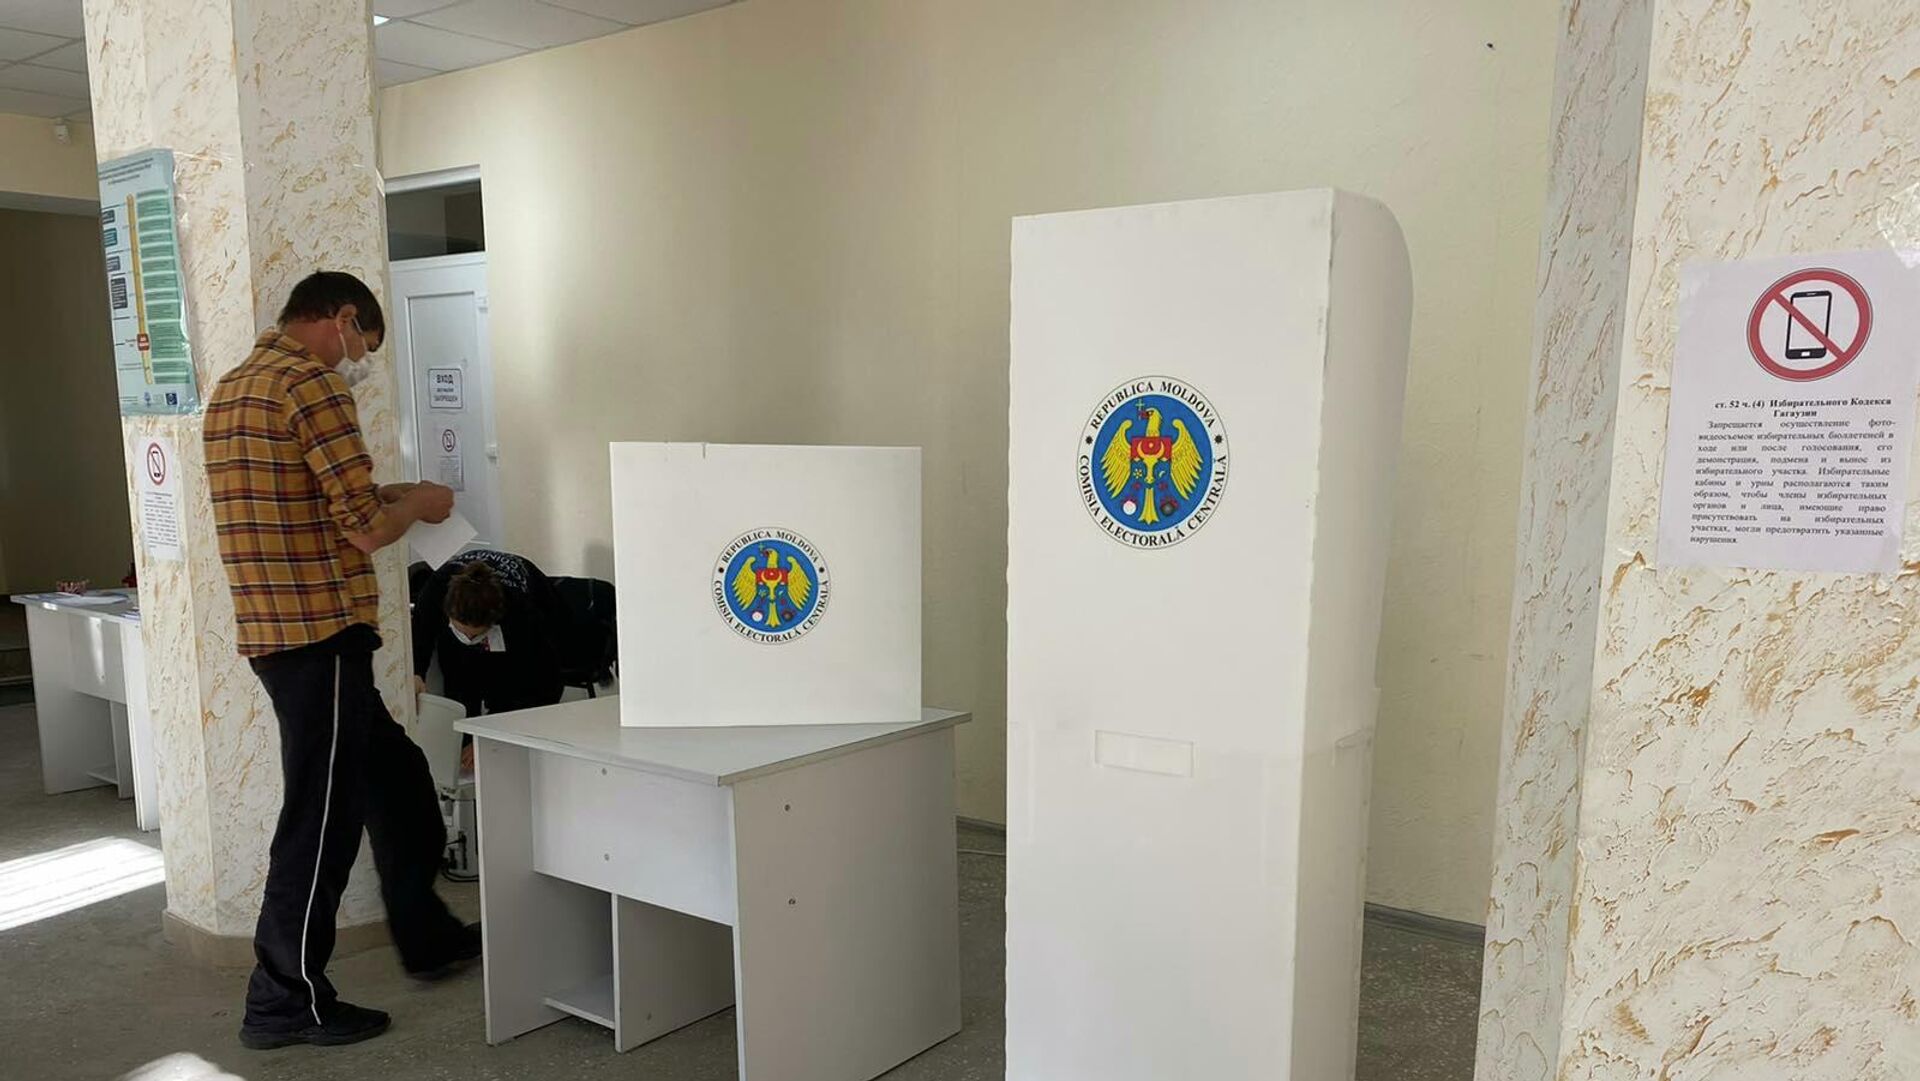 Вопрос о финансировании выборов в Вулканештах и Чок-Майдане решен: выделено 766 тысяч лей